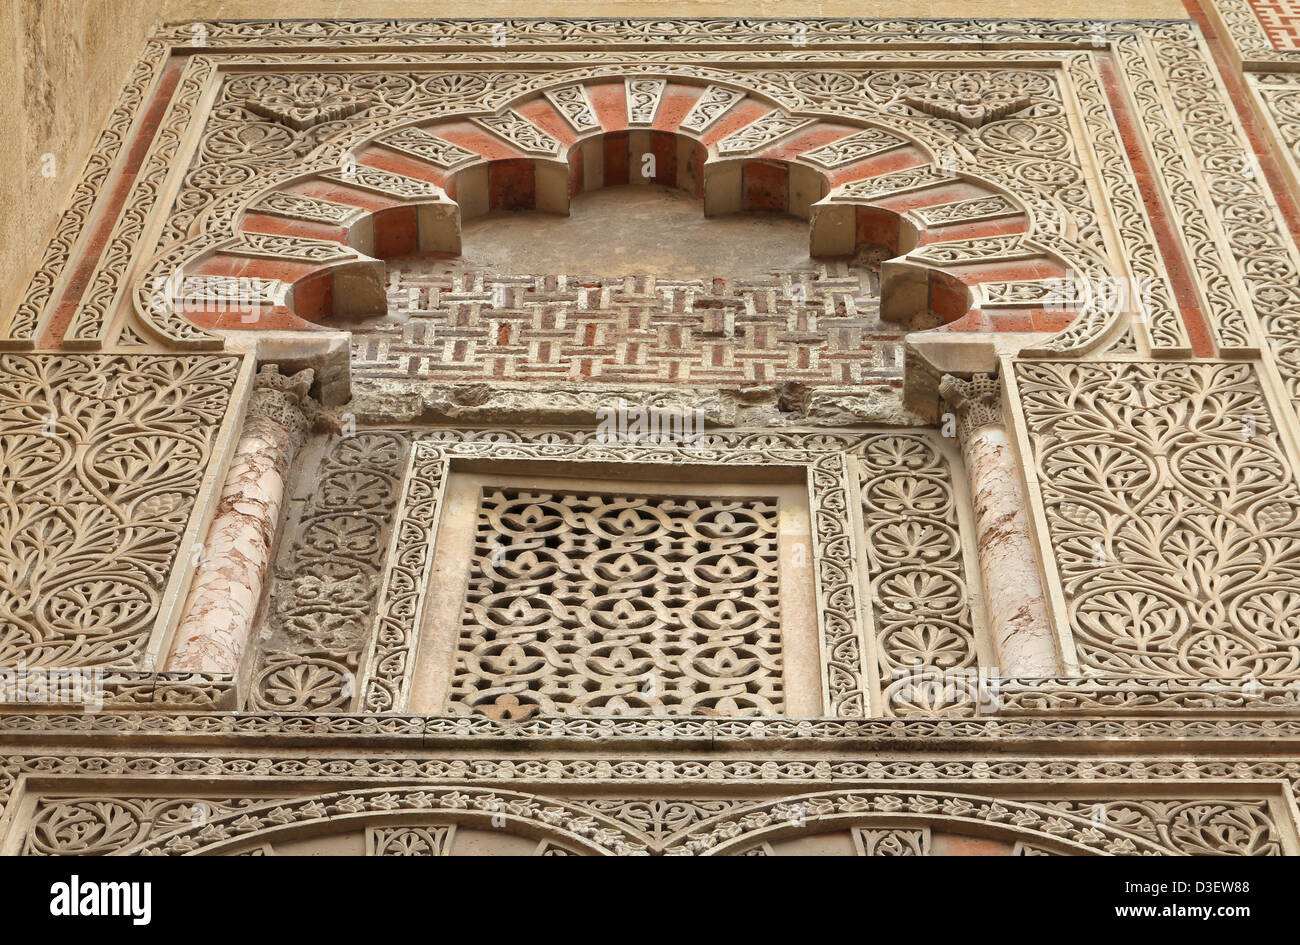 Córdoba, Spanien. Die große Moschee (derzeit katholische Kathedrale). UNESCO-Weltkulturerbe. Mashrabiya Fenster. Stockfoto